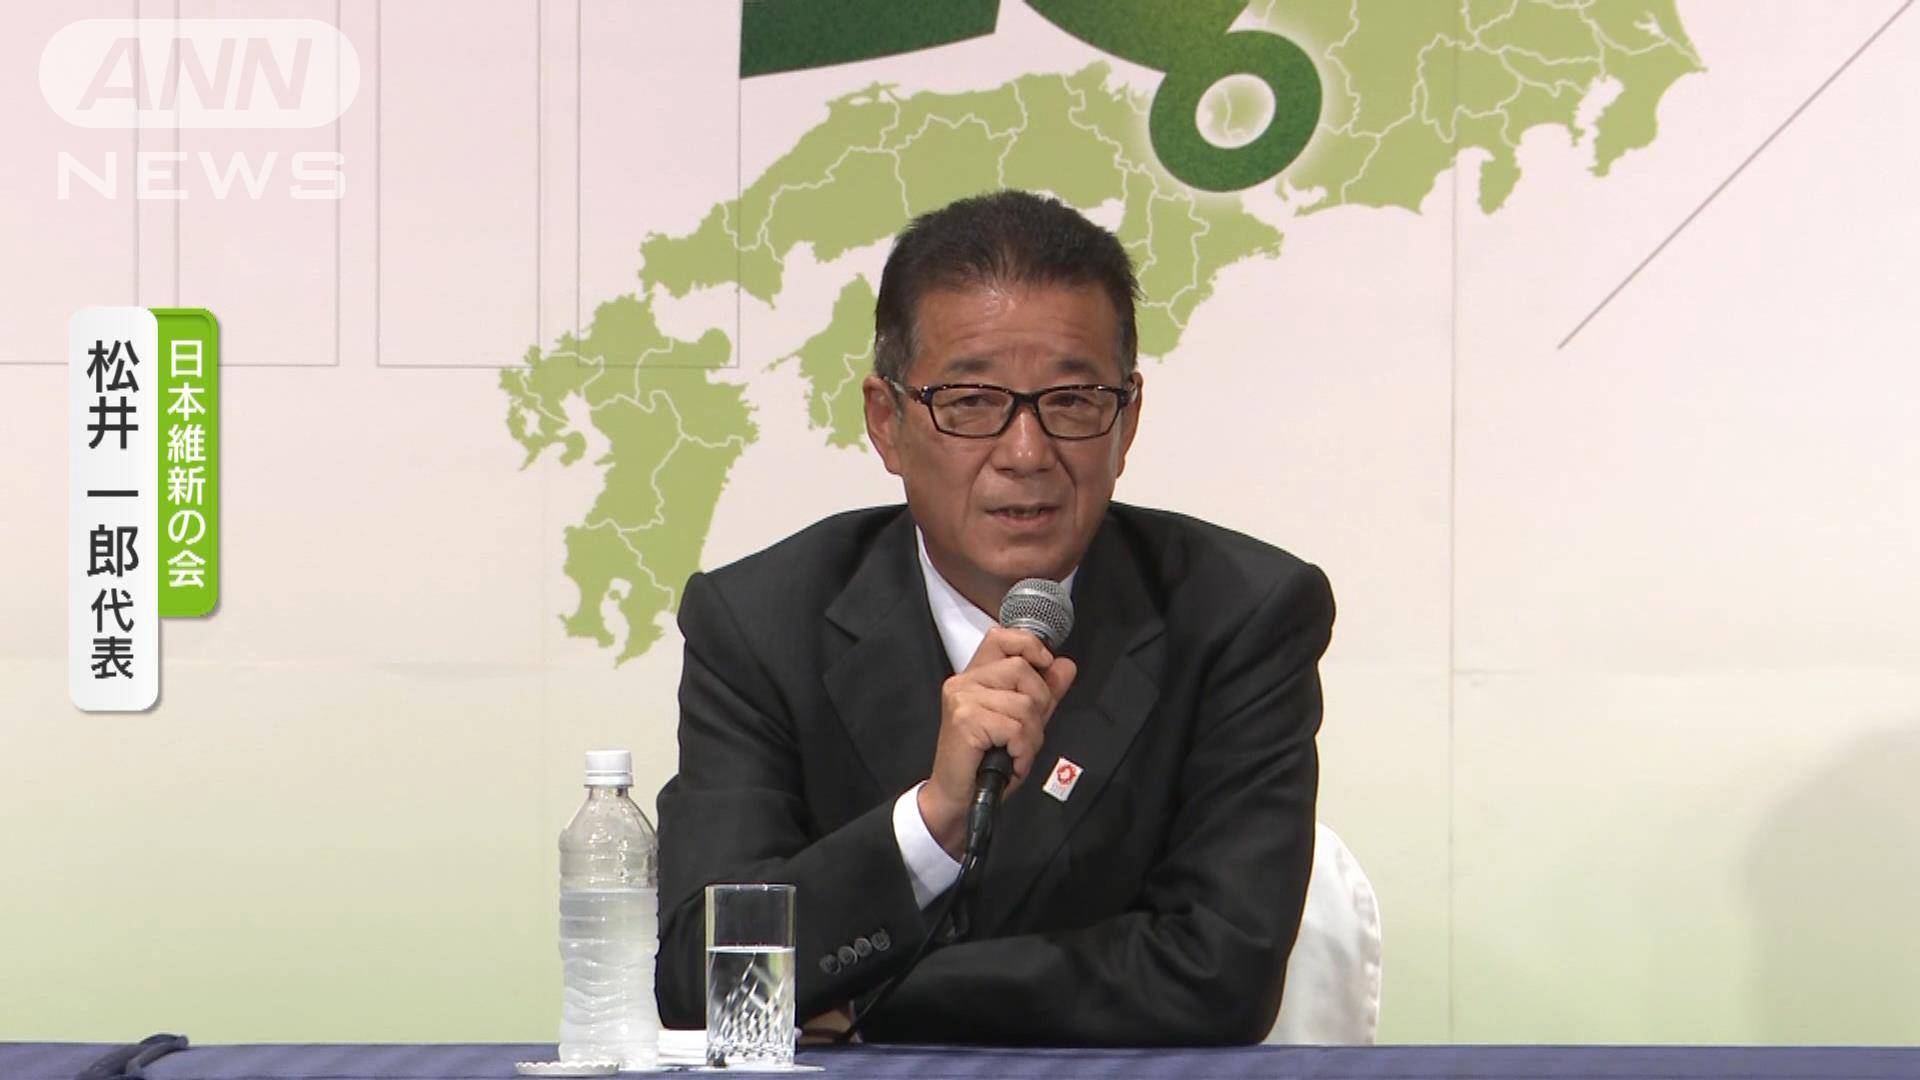 維新 松井一郎代表が代表辞任を表明 吉村洋文副代表は不出馬明言